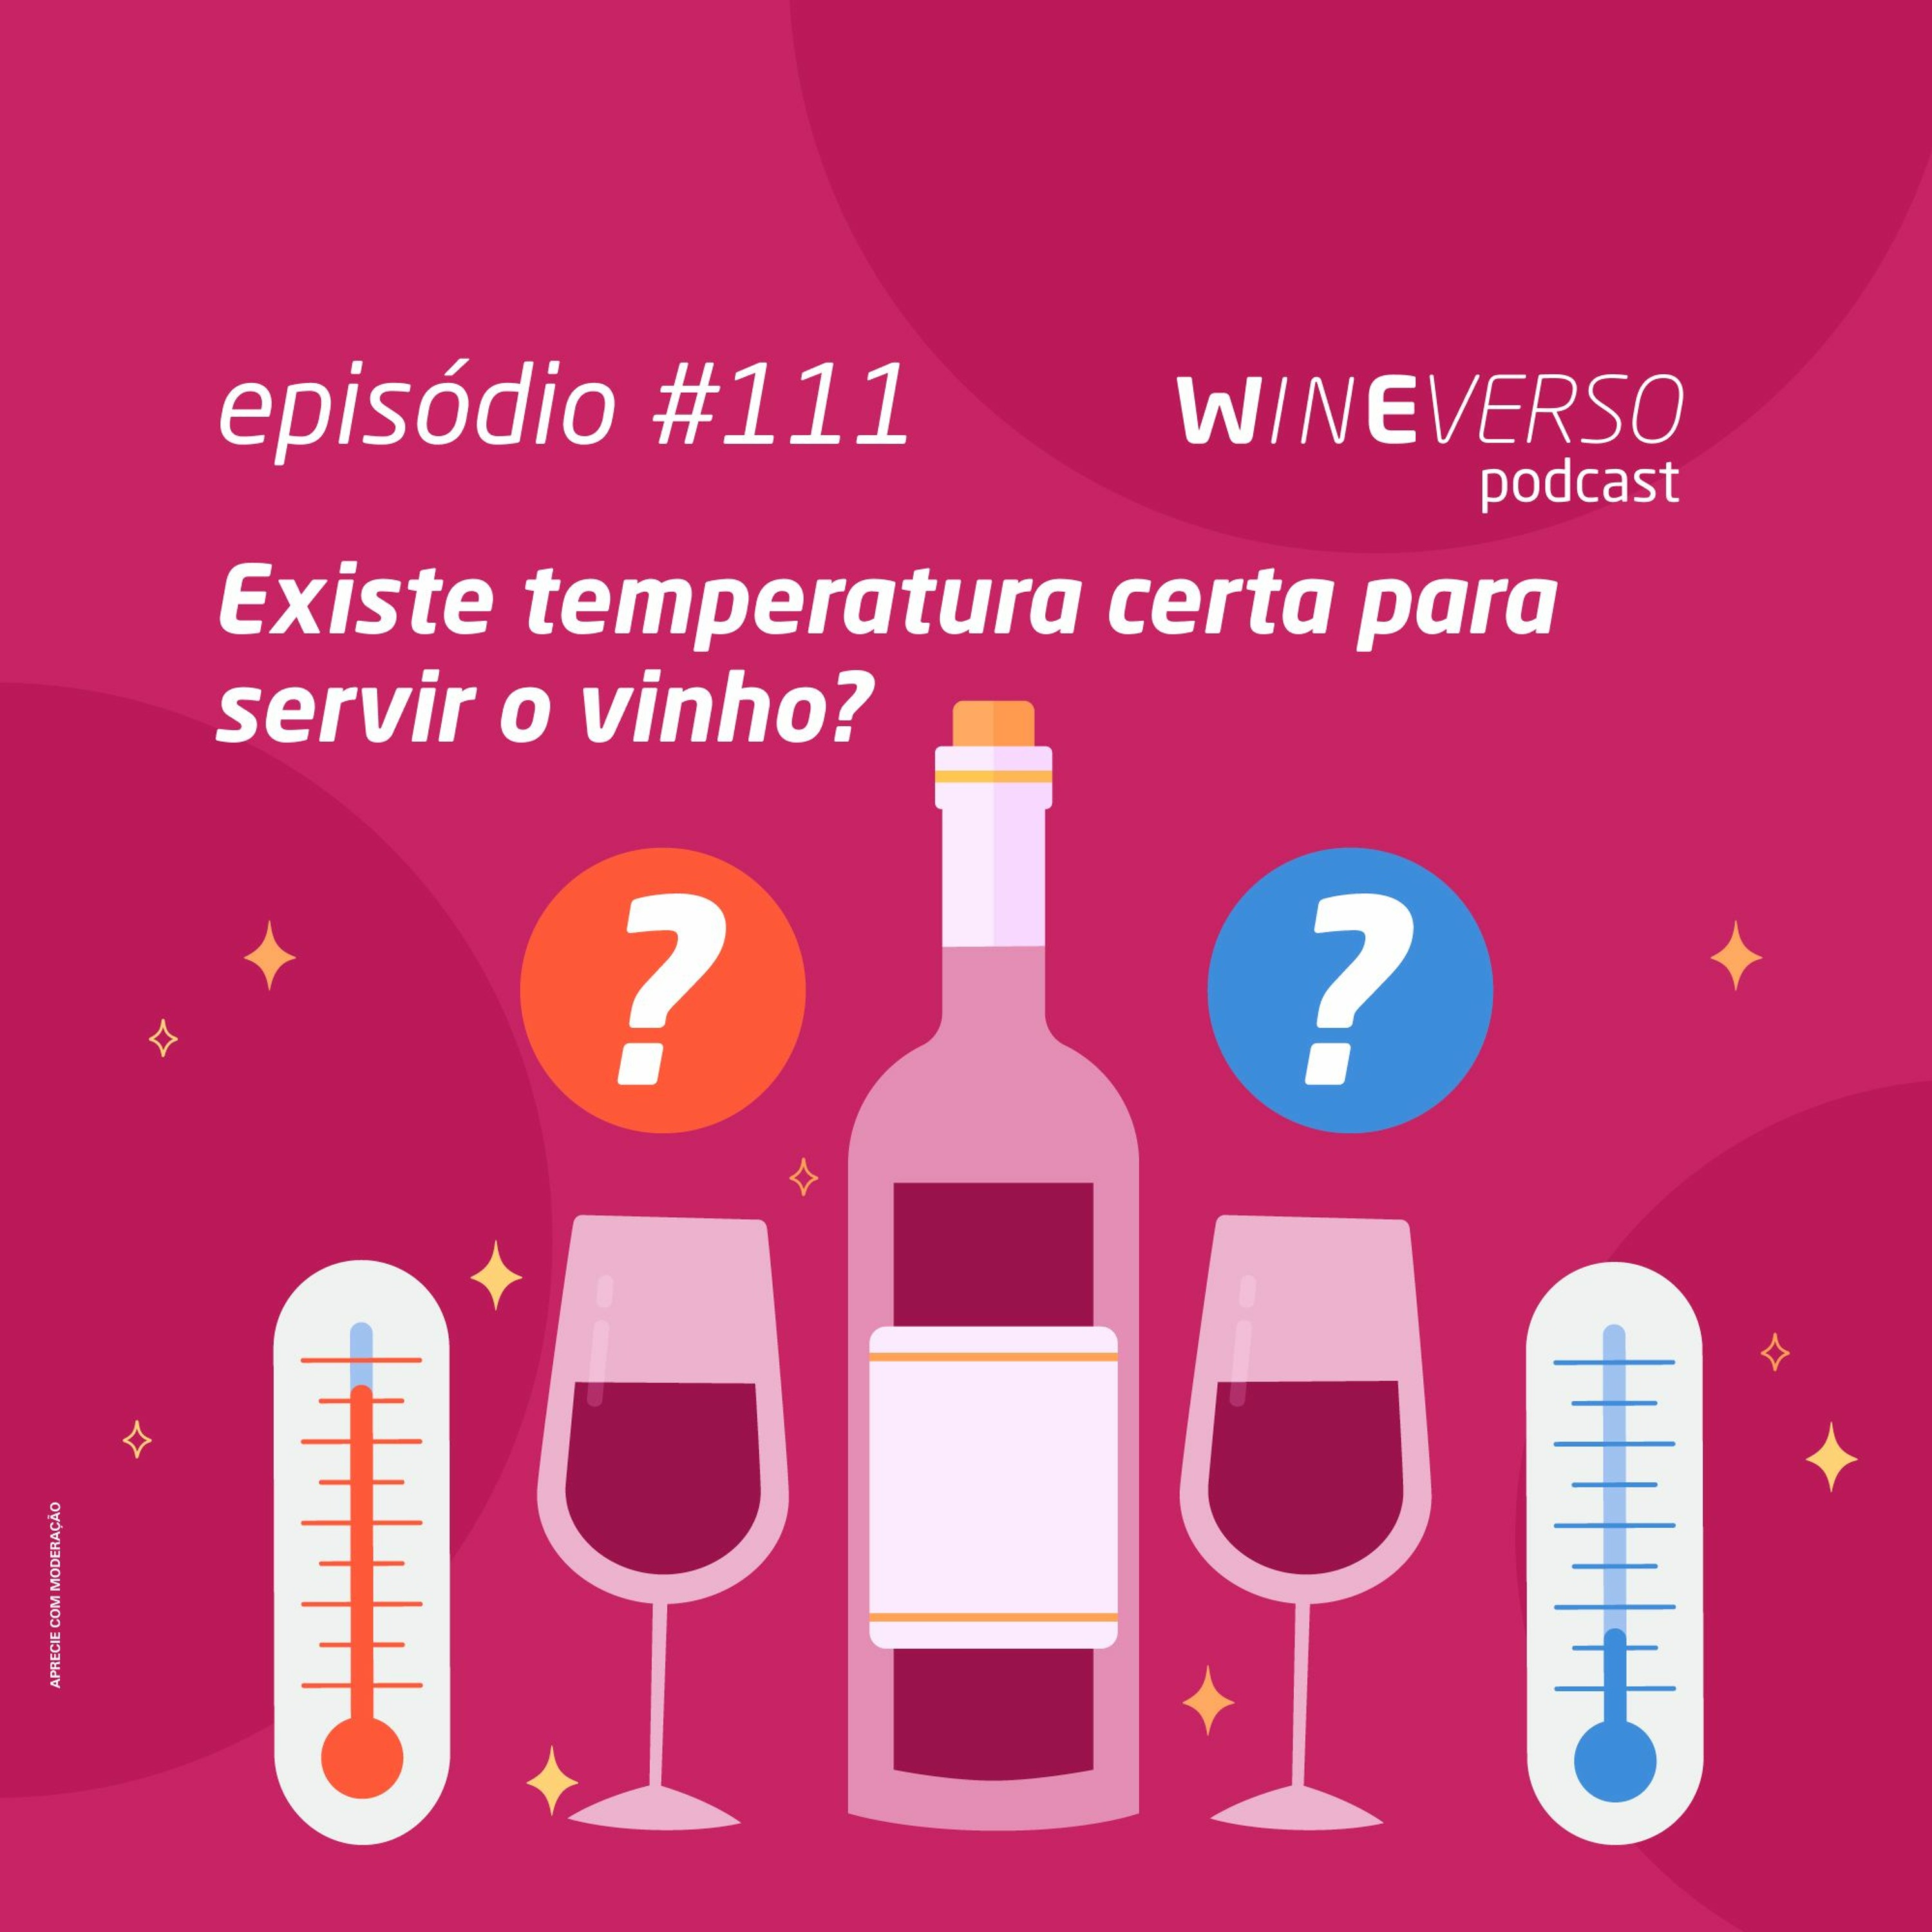 Existe temperatura certa para servir o vinho?